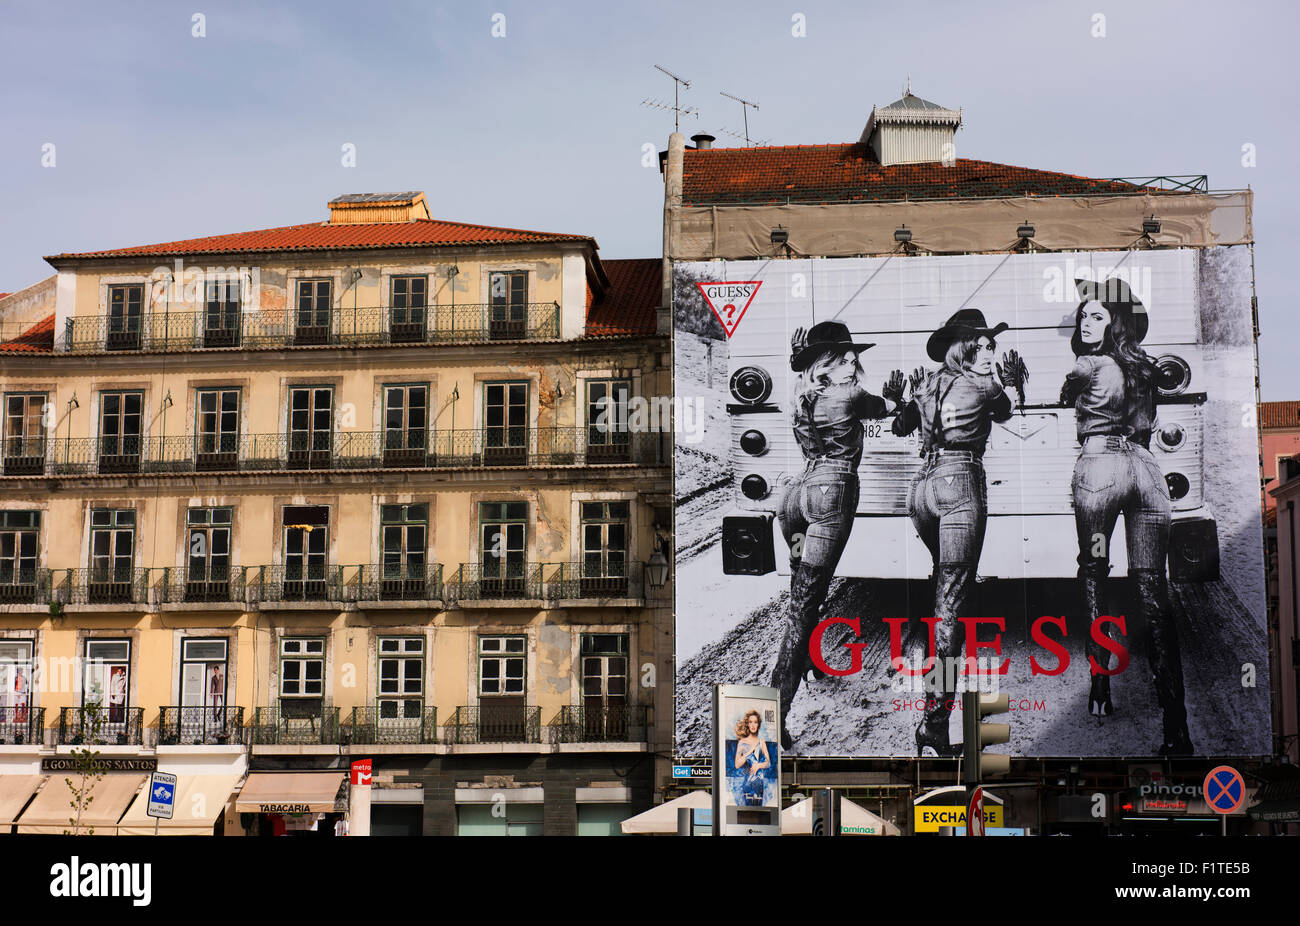 Werbung für Guess Damenjeans an der Seite eines Gebäudes in Lissabon. Stockfoto